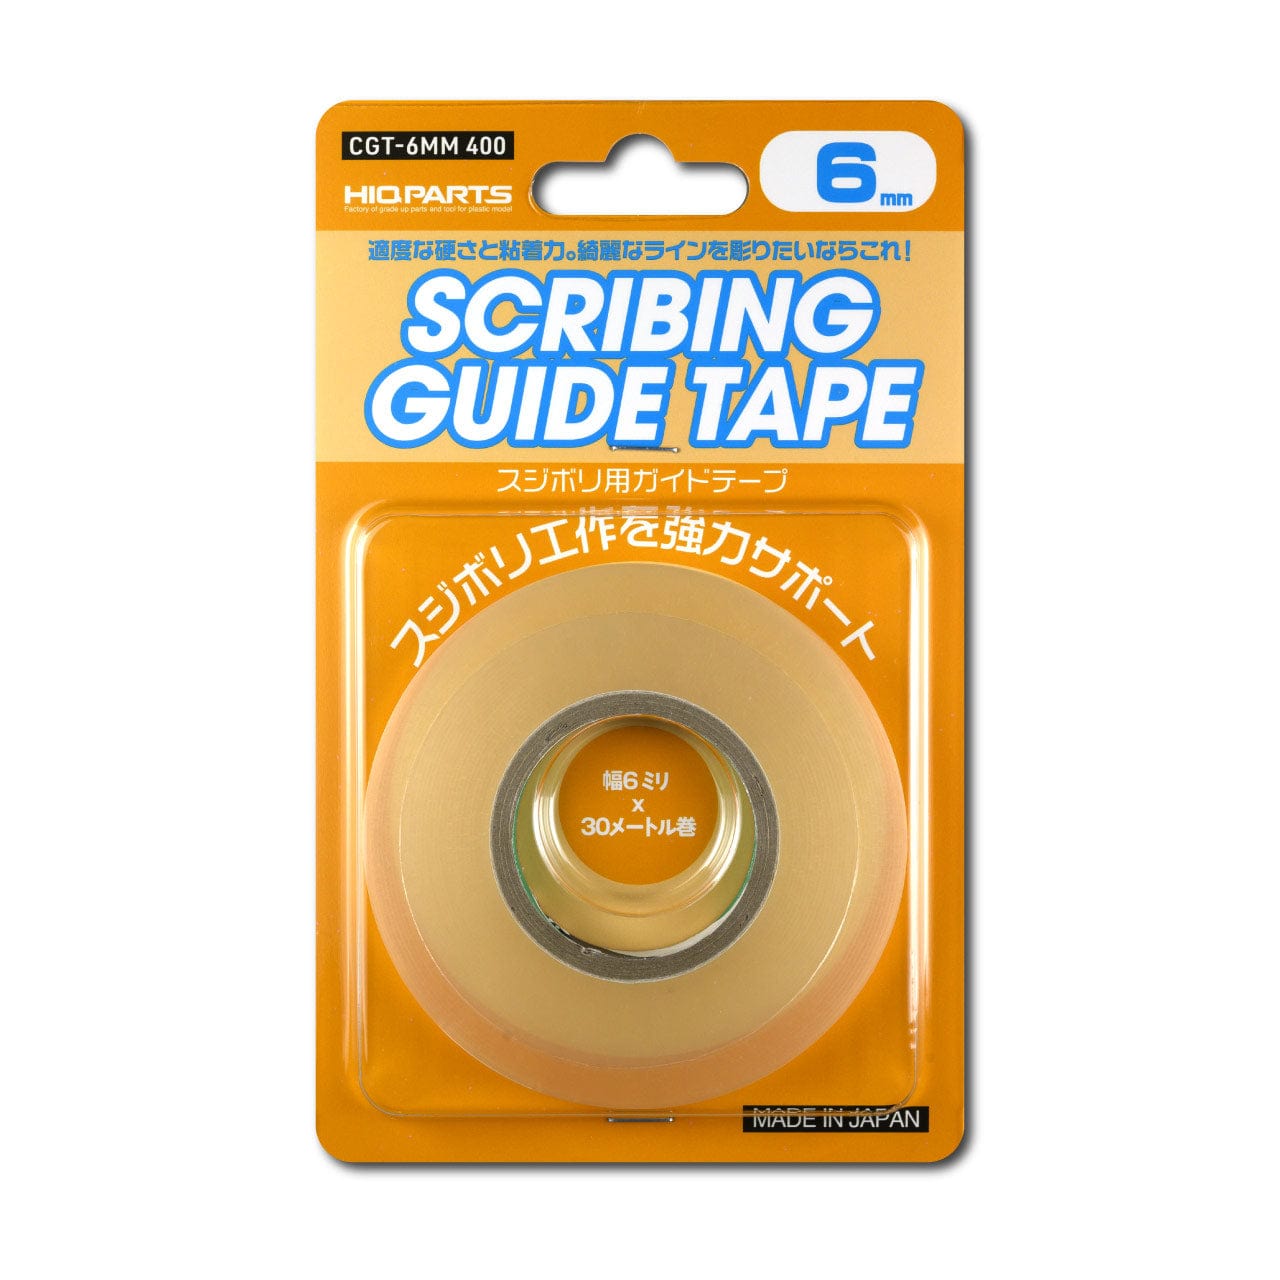 HiQ Scale Model Accessories HiQ Parts Guide Tape for Scribing 6mm (30m Roll)